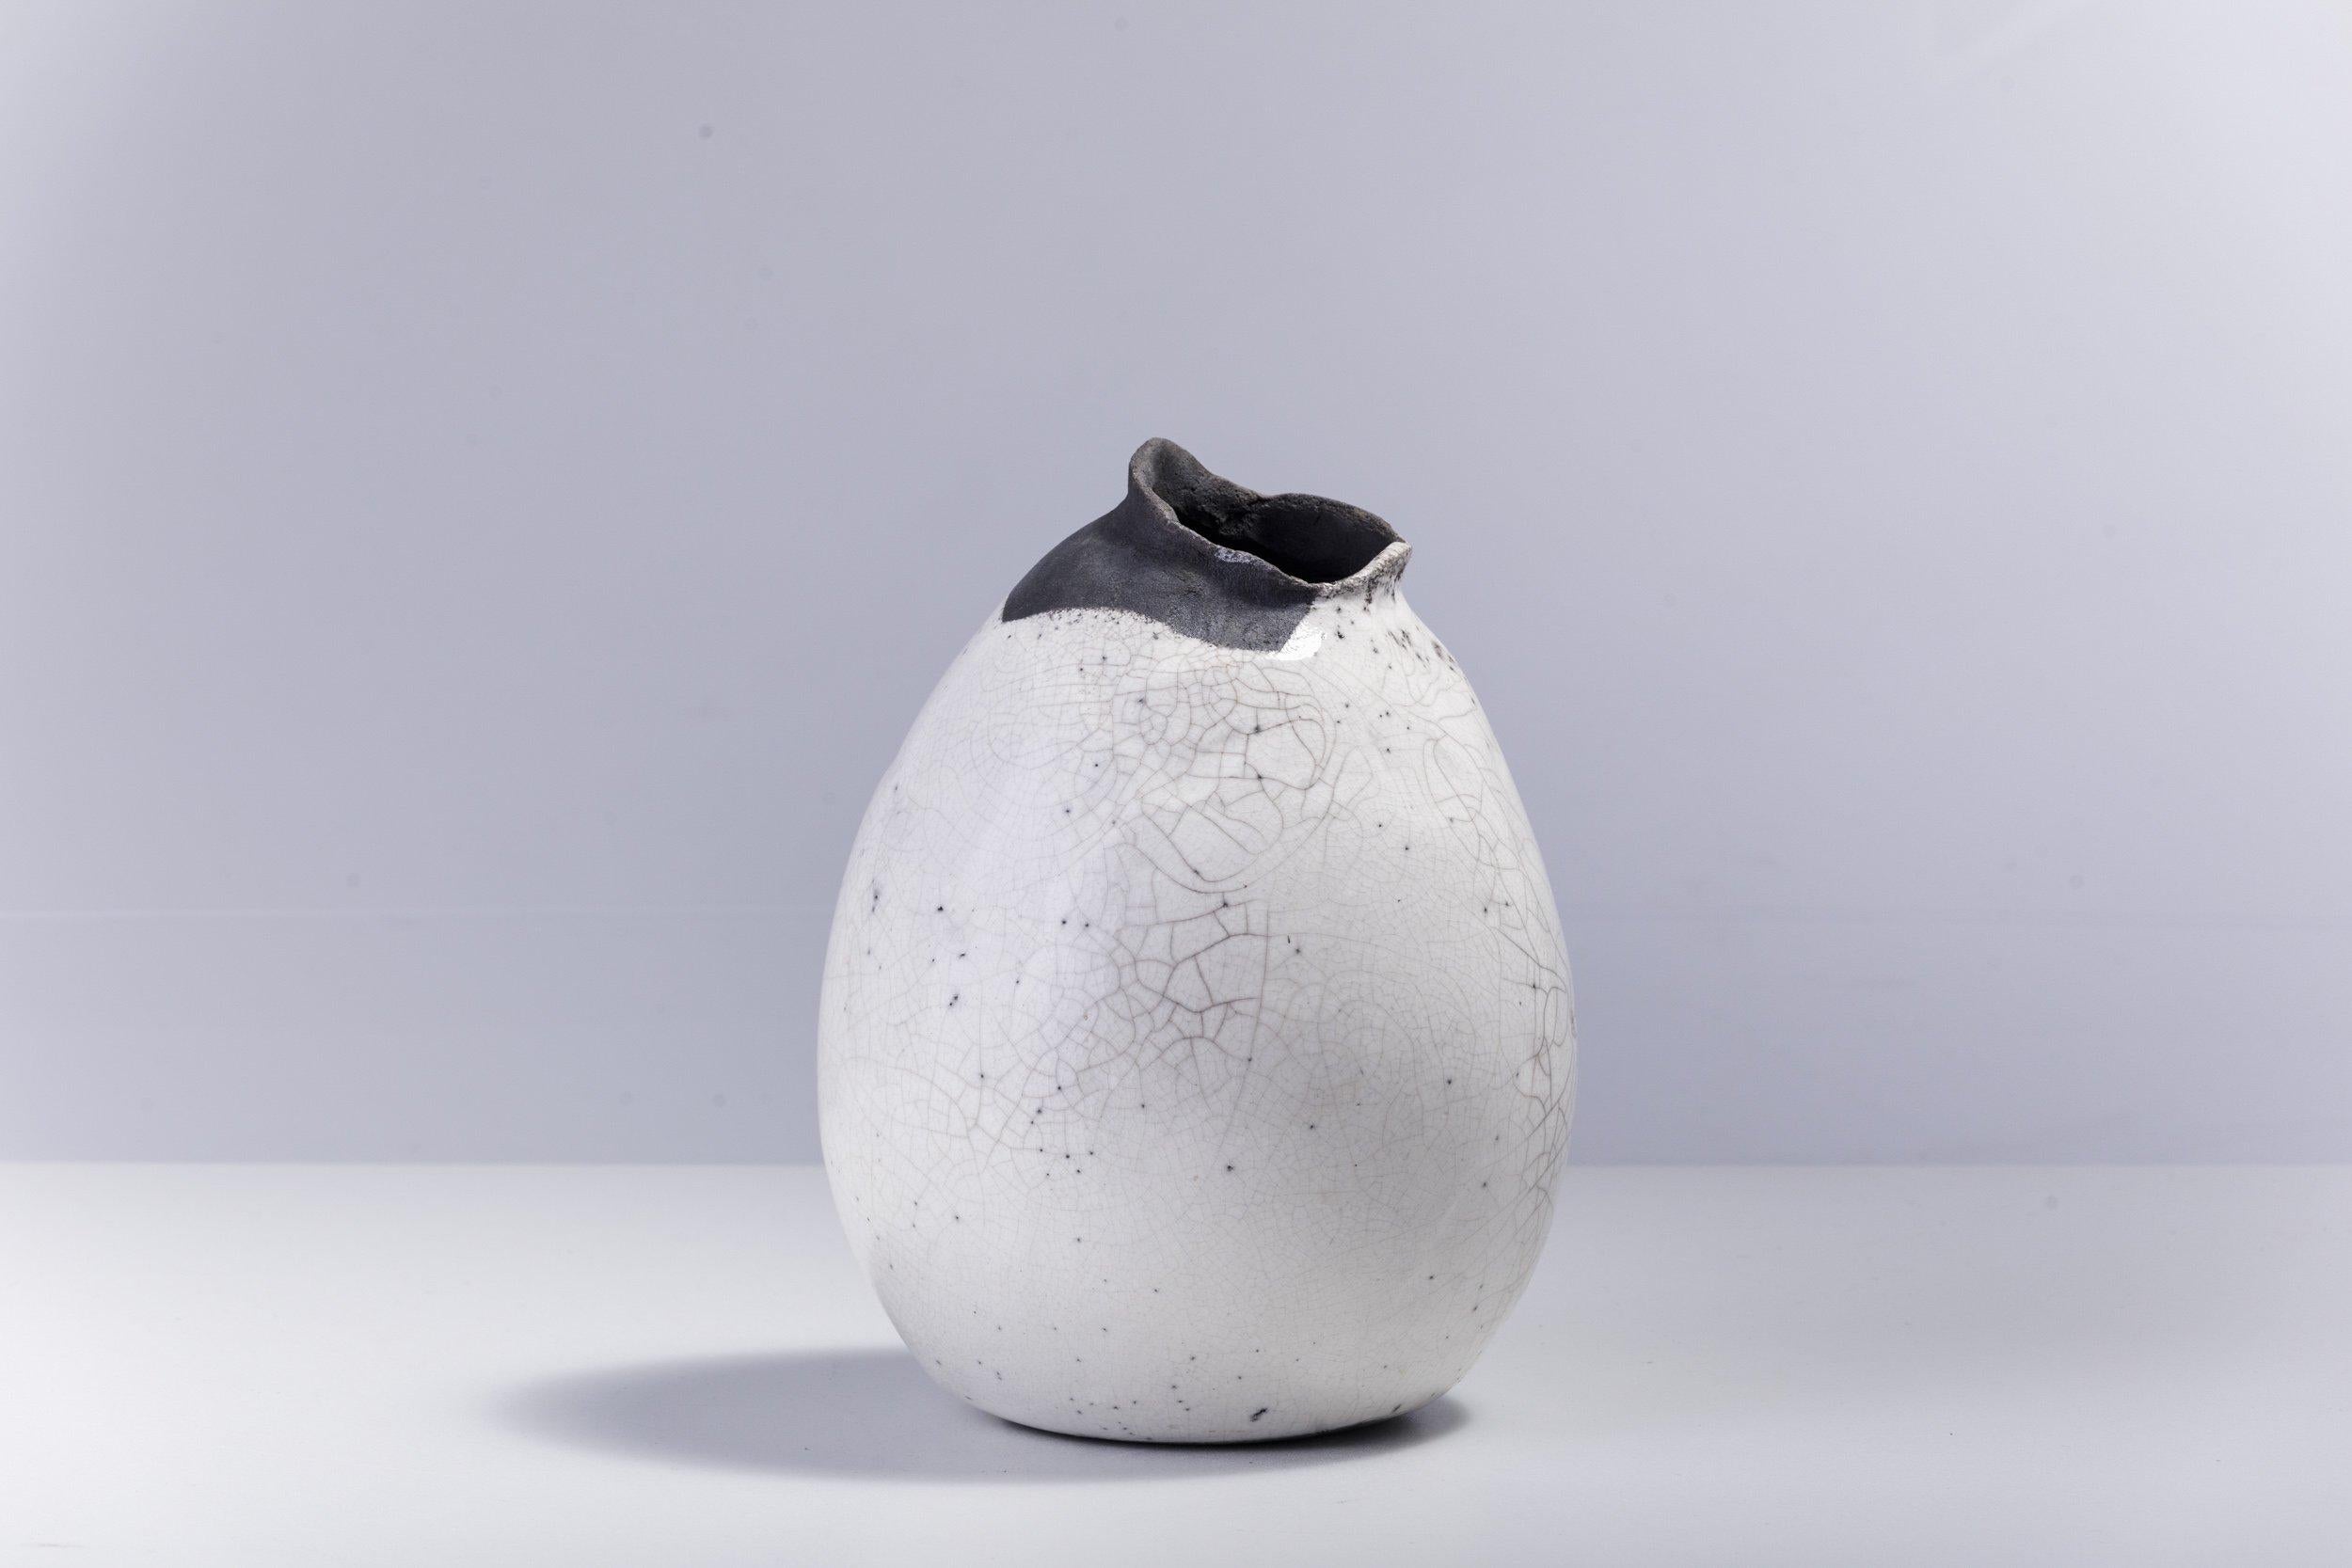 Impermanenza noire

Témoignage unique de l'artisanat, ce magnifique vase sculptural se distingue par un bord irrégulier, dentelé et de couleur noire, résultat de l'étonnante technique de cuisson Raku d'origine japonaise. Sa forme bombée en